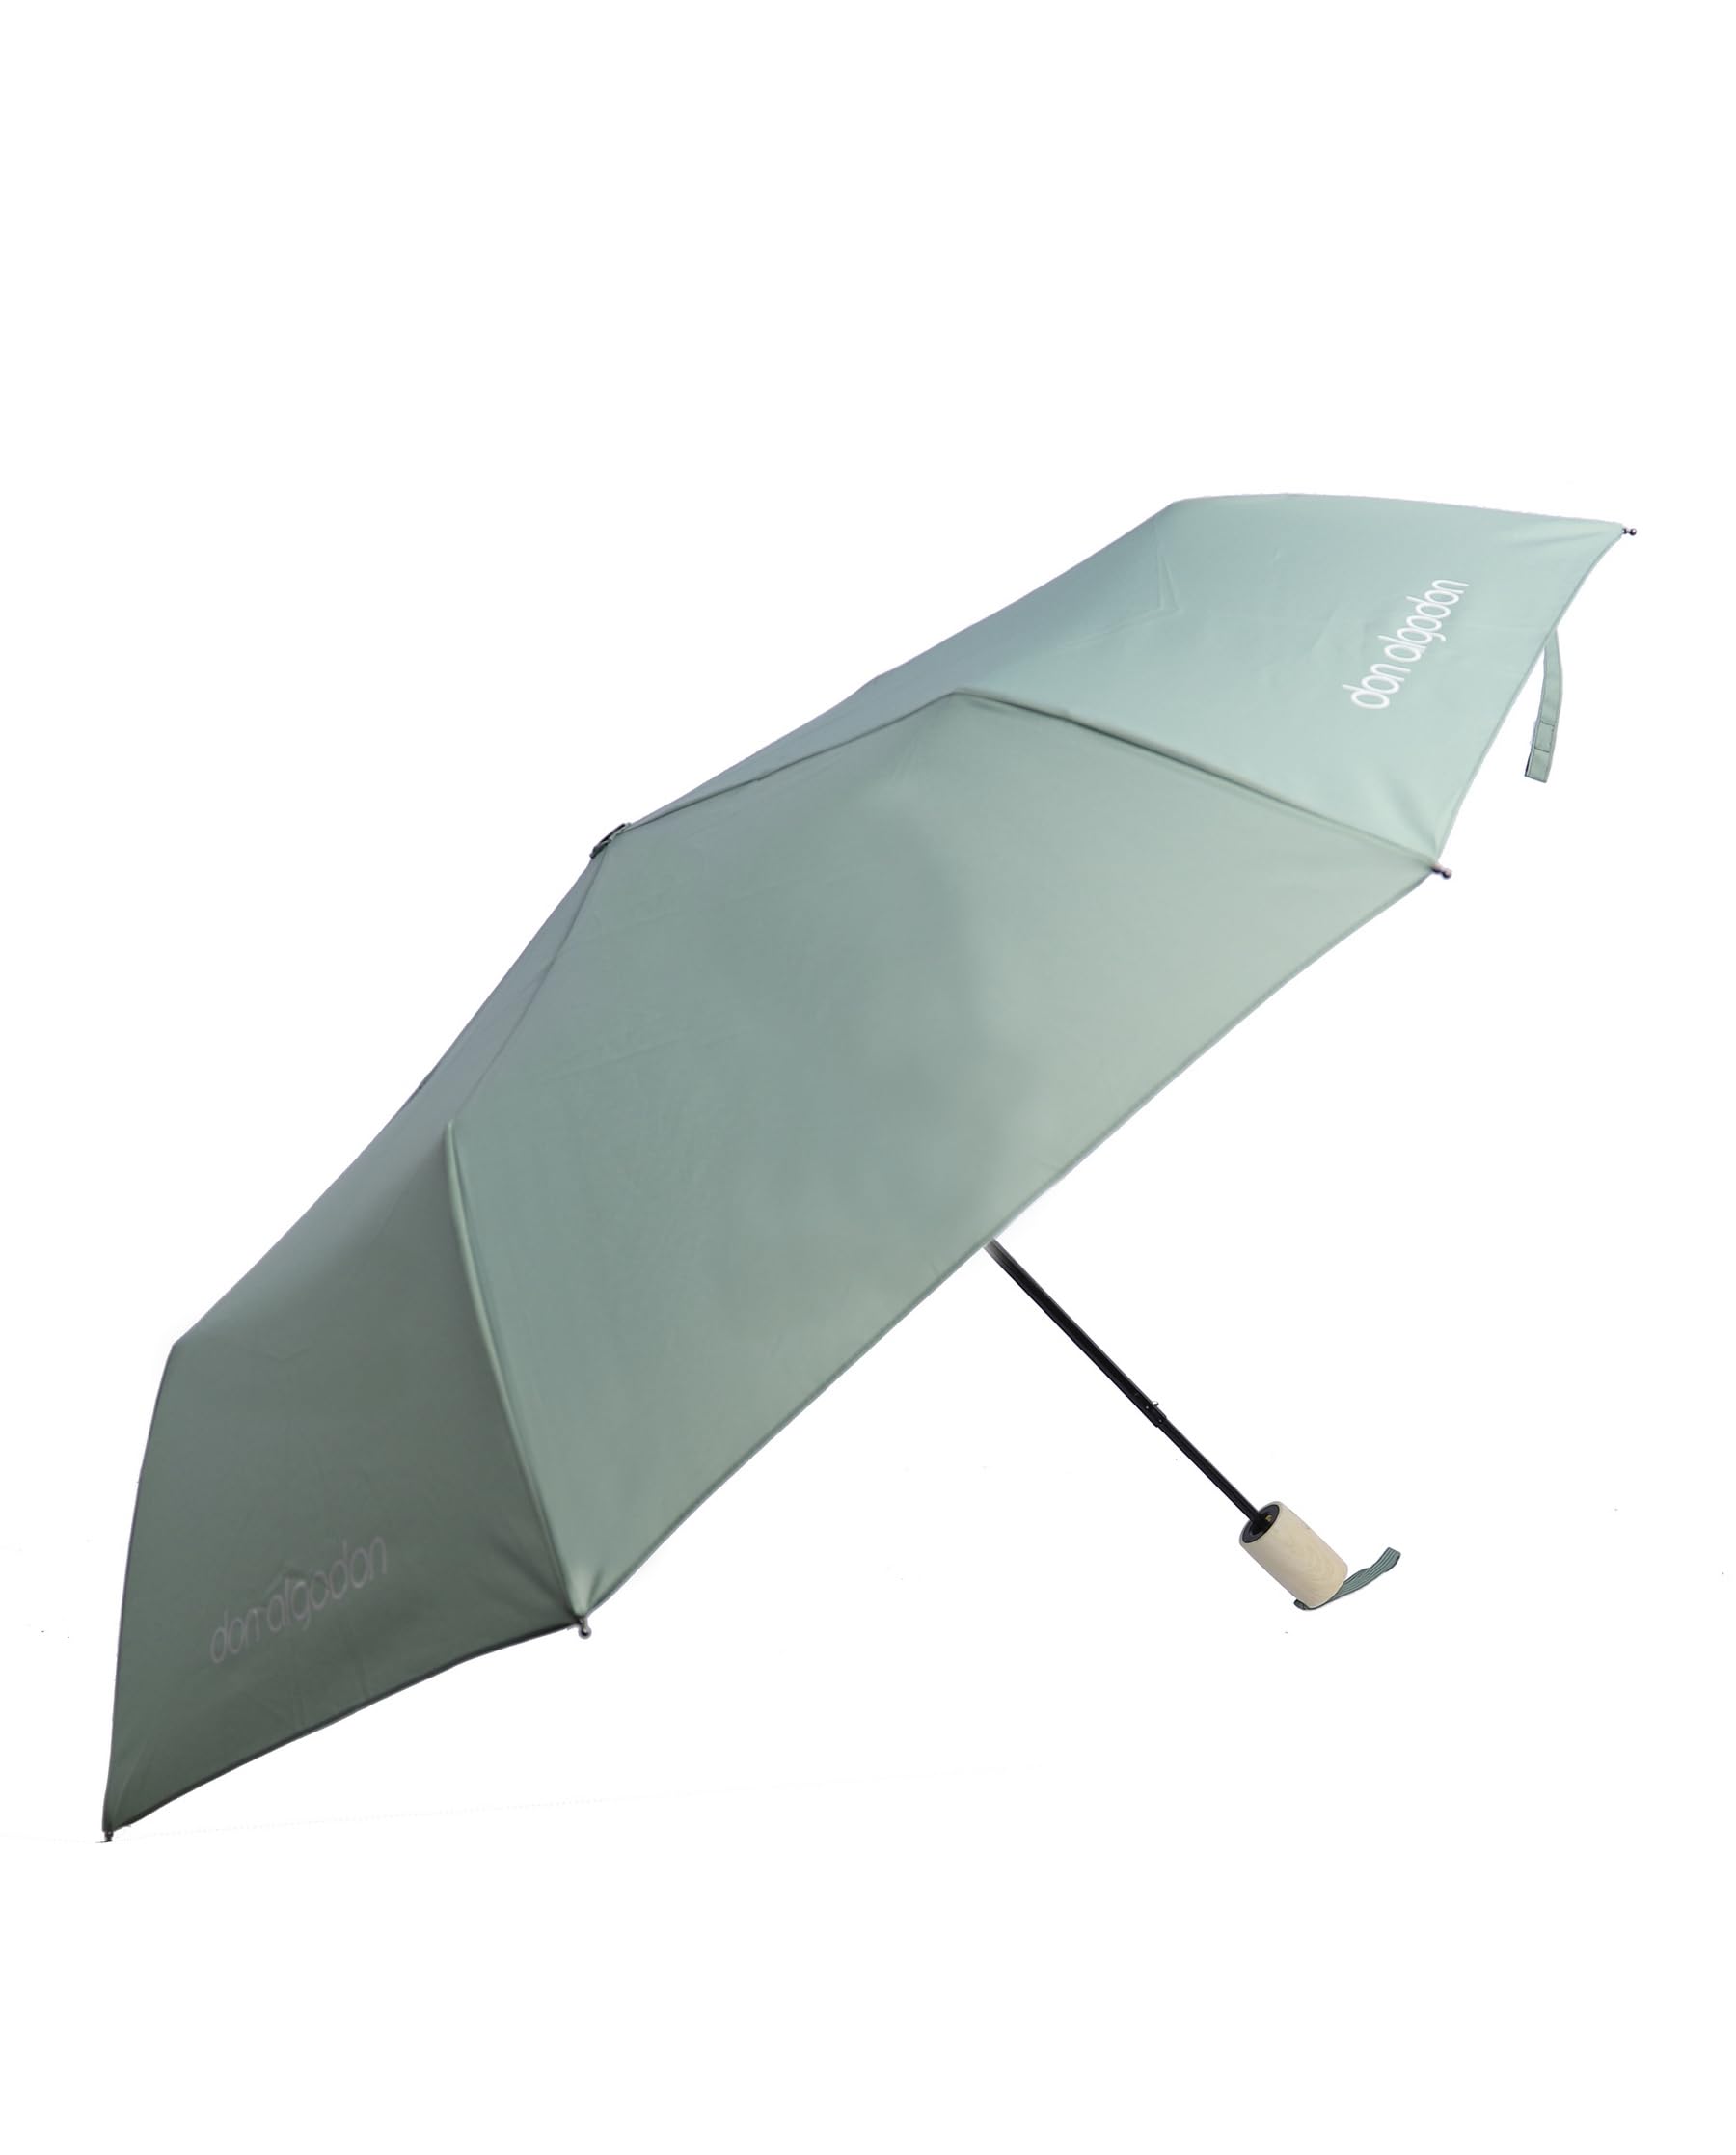 DON ALGODON - Regenschirm sturmfest - Regenschirm damen - Regenschirm taschenschirm automatik sturmfest - Regenschirme für damen sturmfest - Regenschirm automatik auf und zu